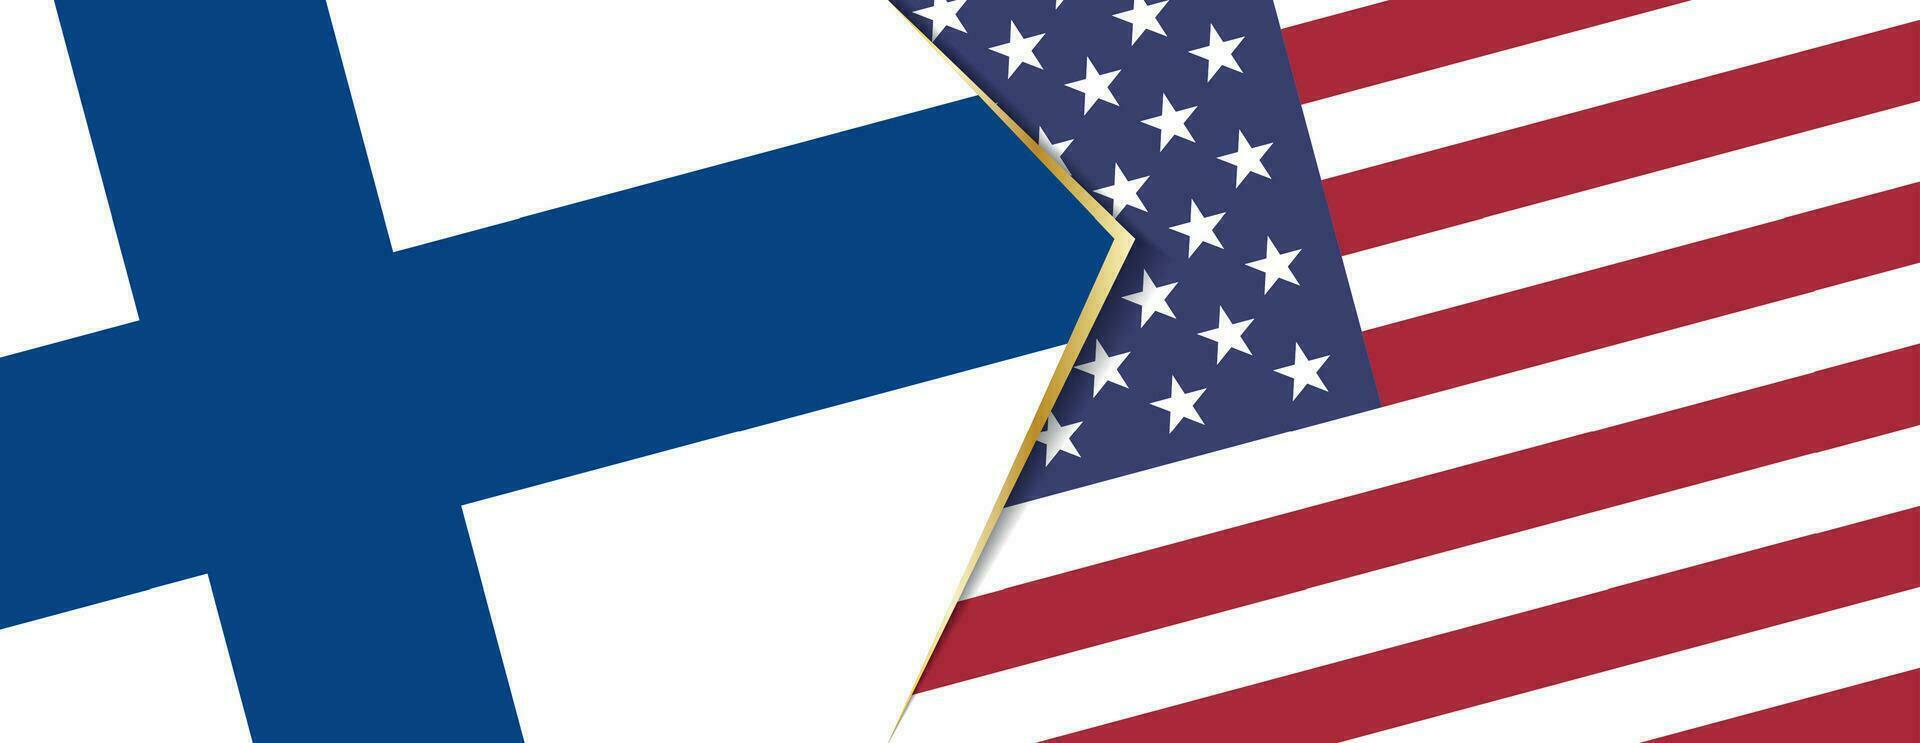 finland och USA flaggor, två vektor flaggor.